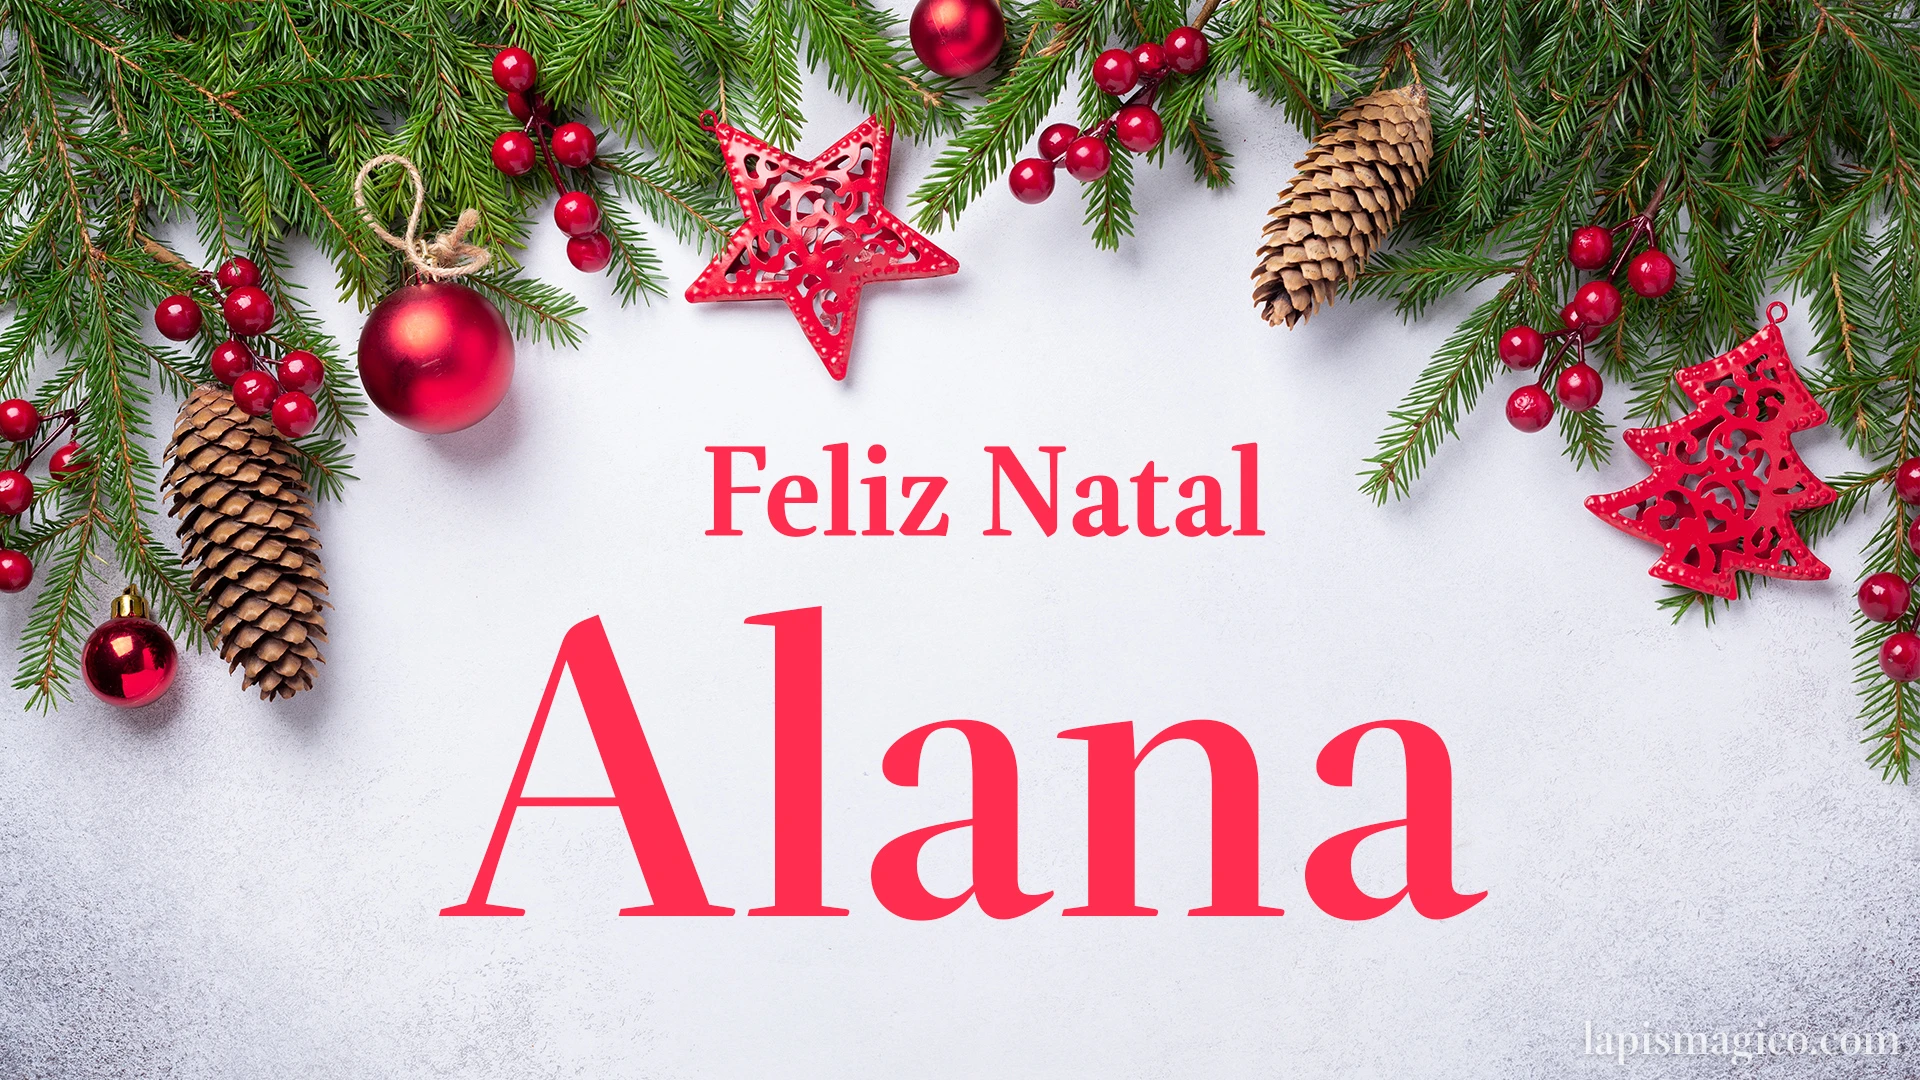 Oh Alana, cinco postais de Feliz Natal Postal com o teu nome